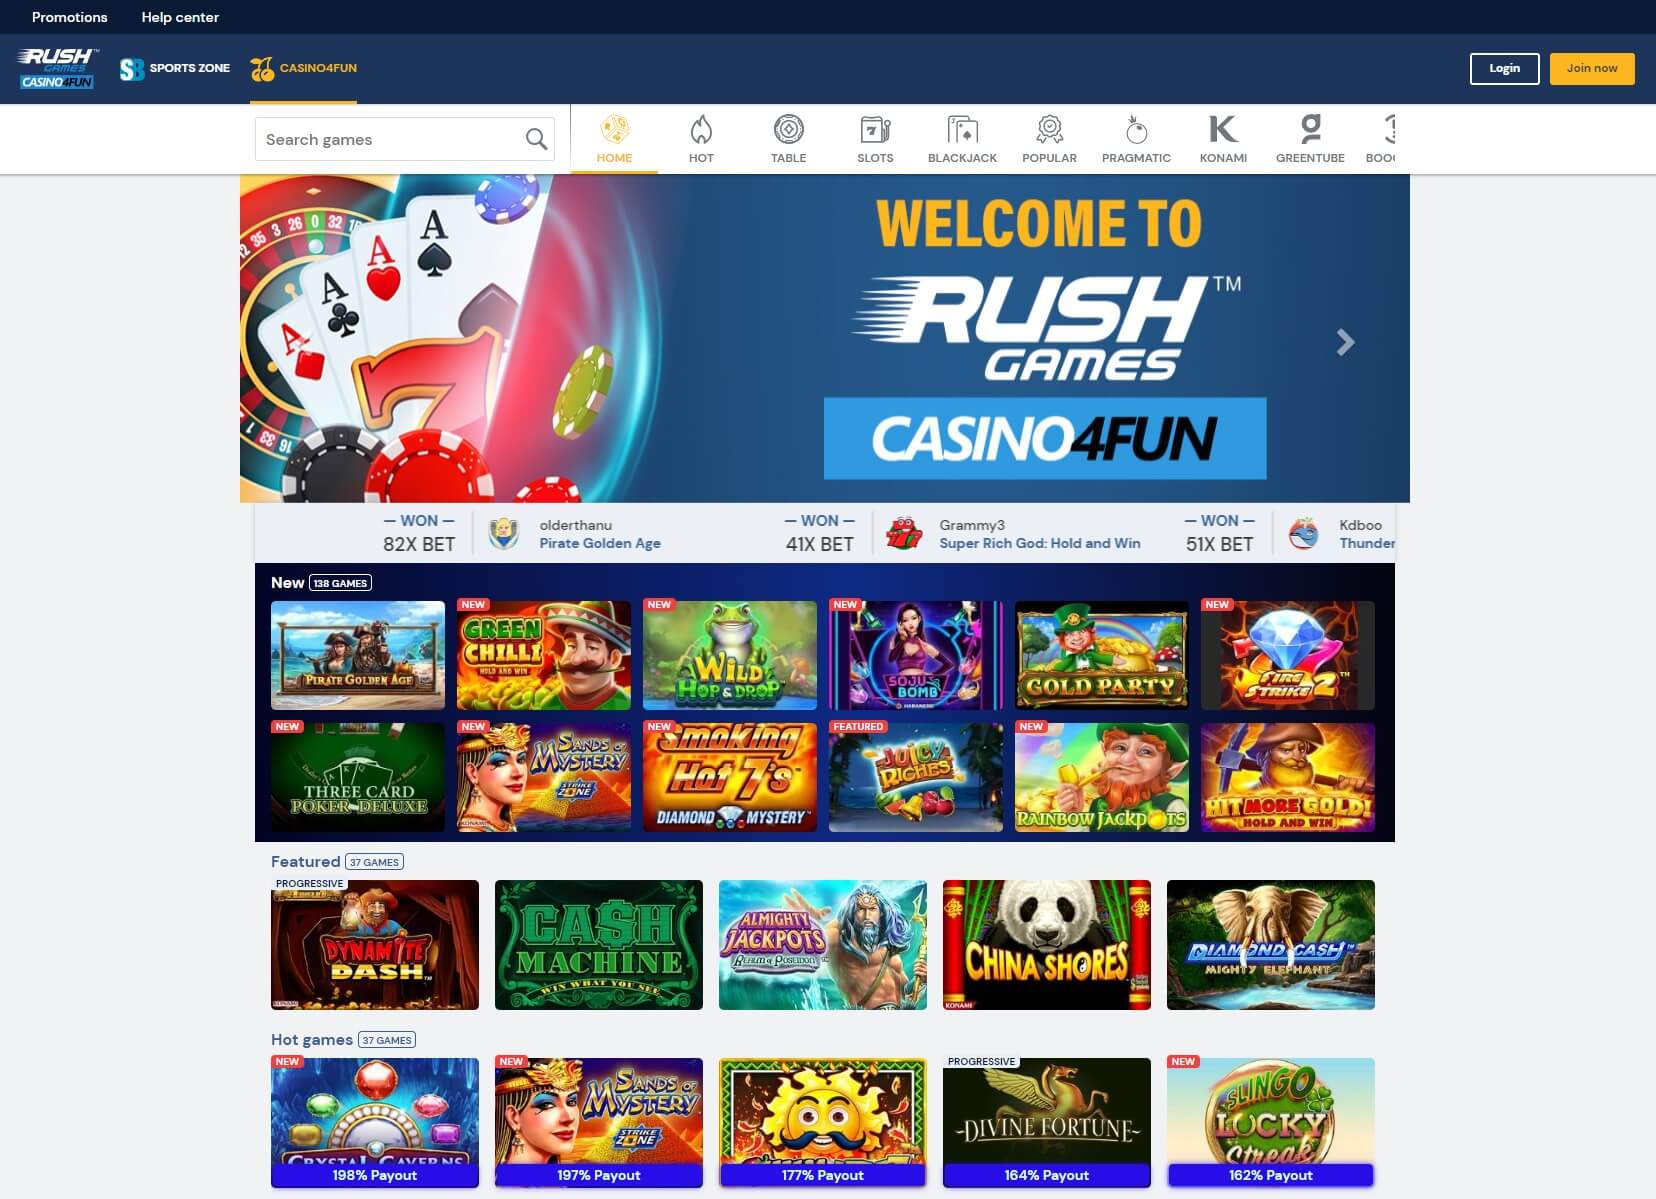 Rush Games Casino4Fun Homepage